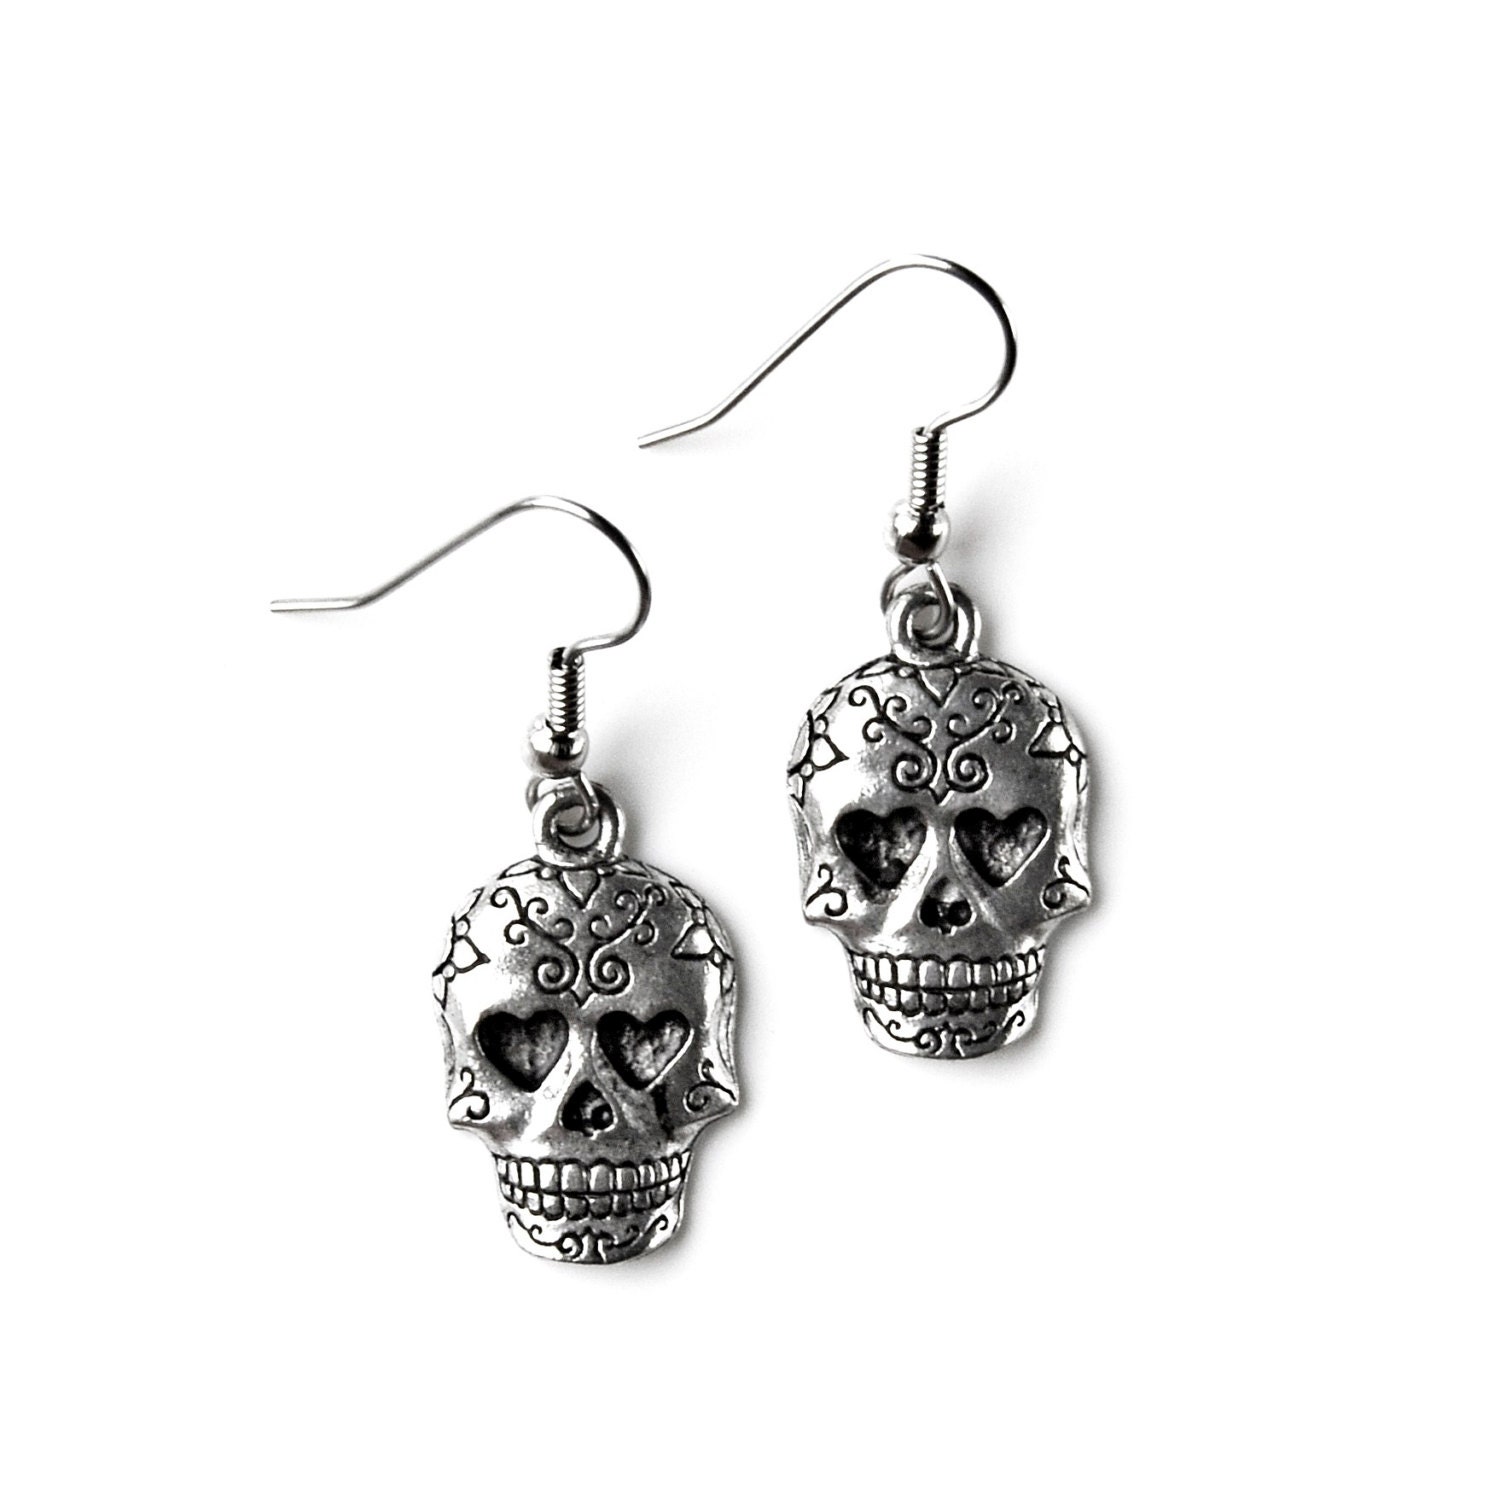 Skull Earrings Accessories Women's Jewelry Gift Idea